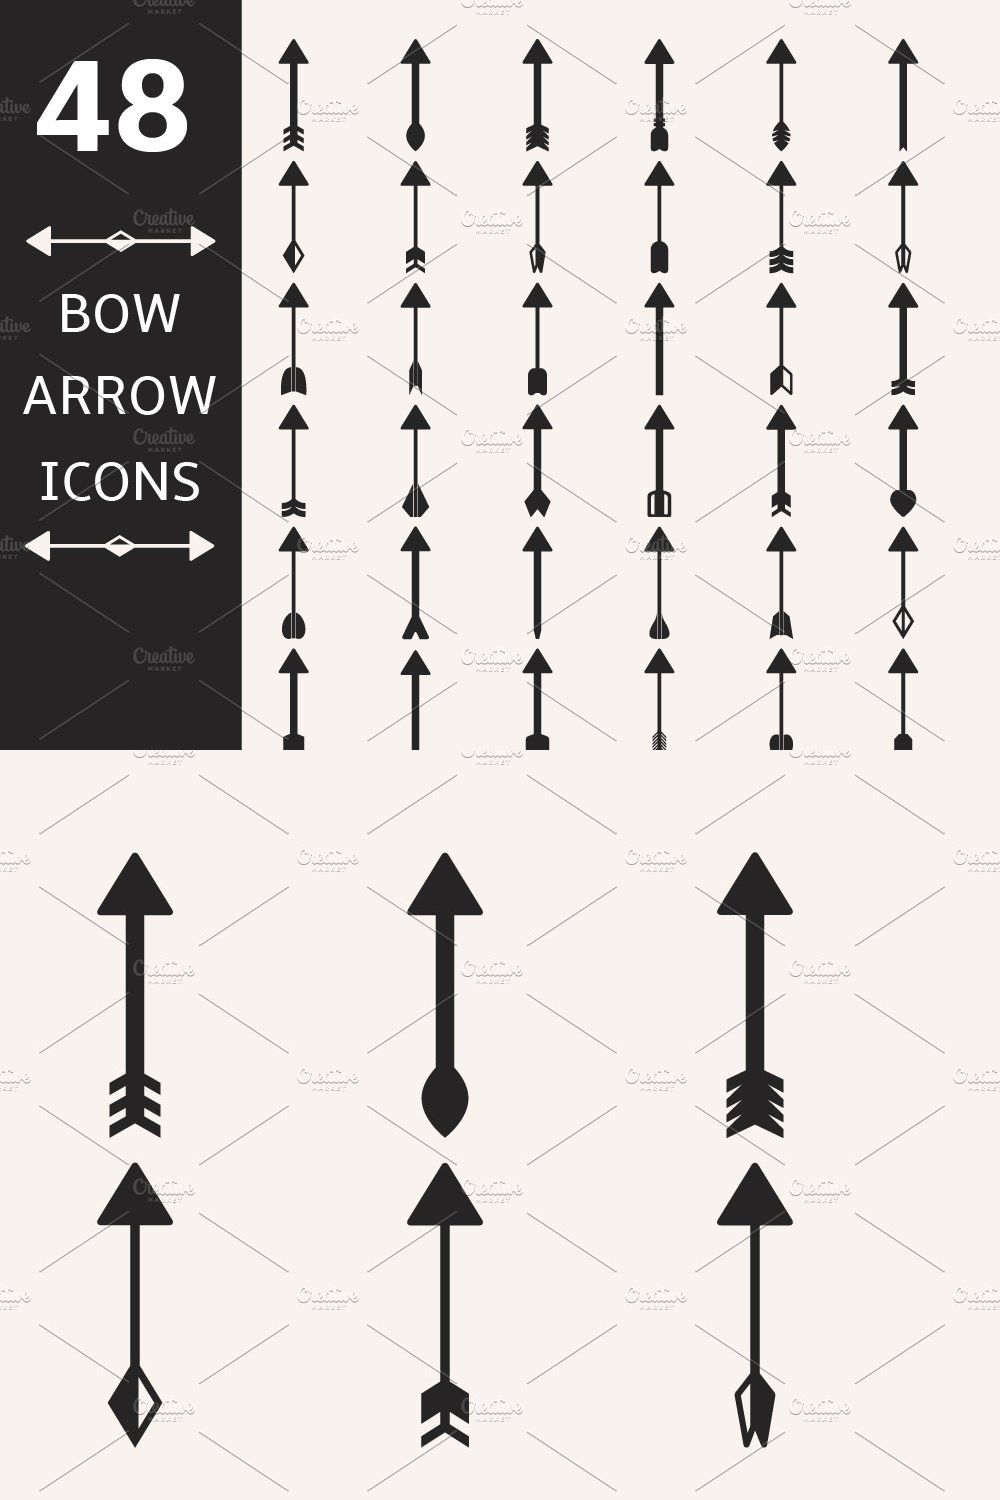 Decorative Arrow Bow Icons Set pinterest preview image.